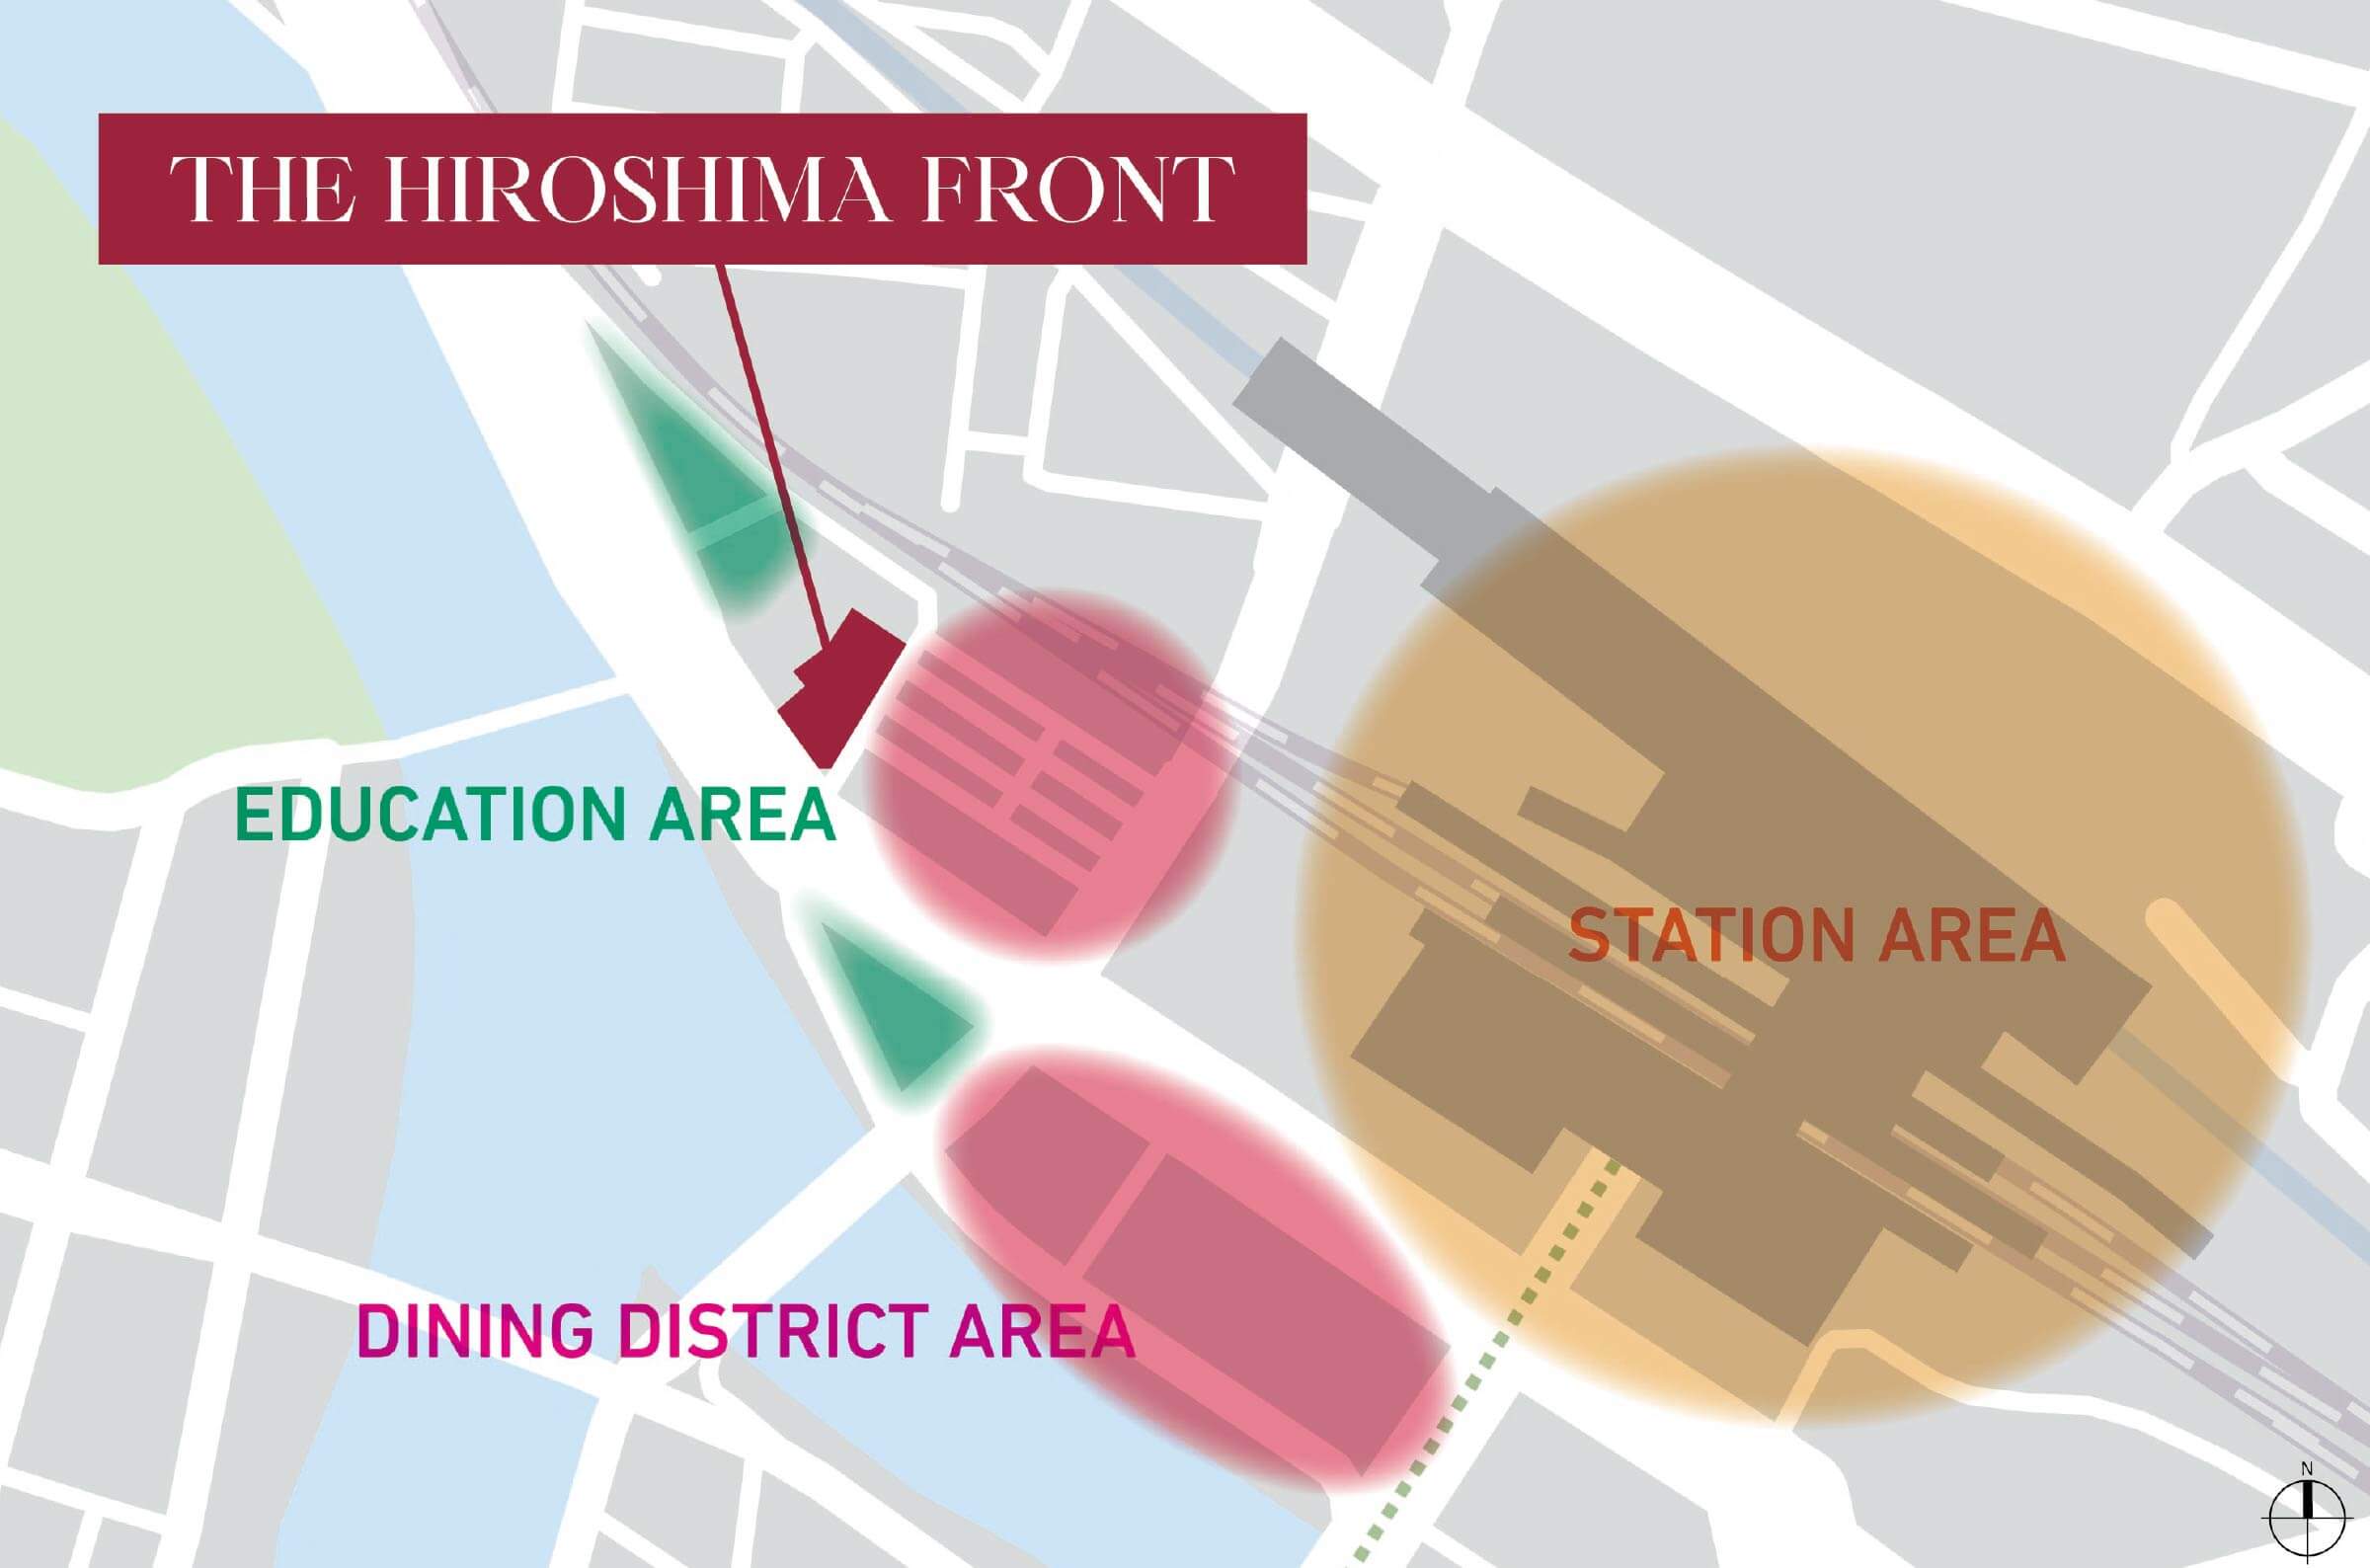 立地概念図 ザ・広島フロントの場所と、Education AreaとStation AreaとDining District Areaの3つの区分が表されている